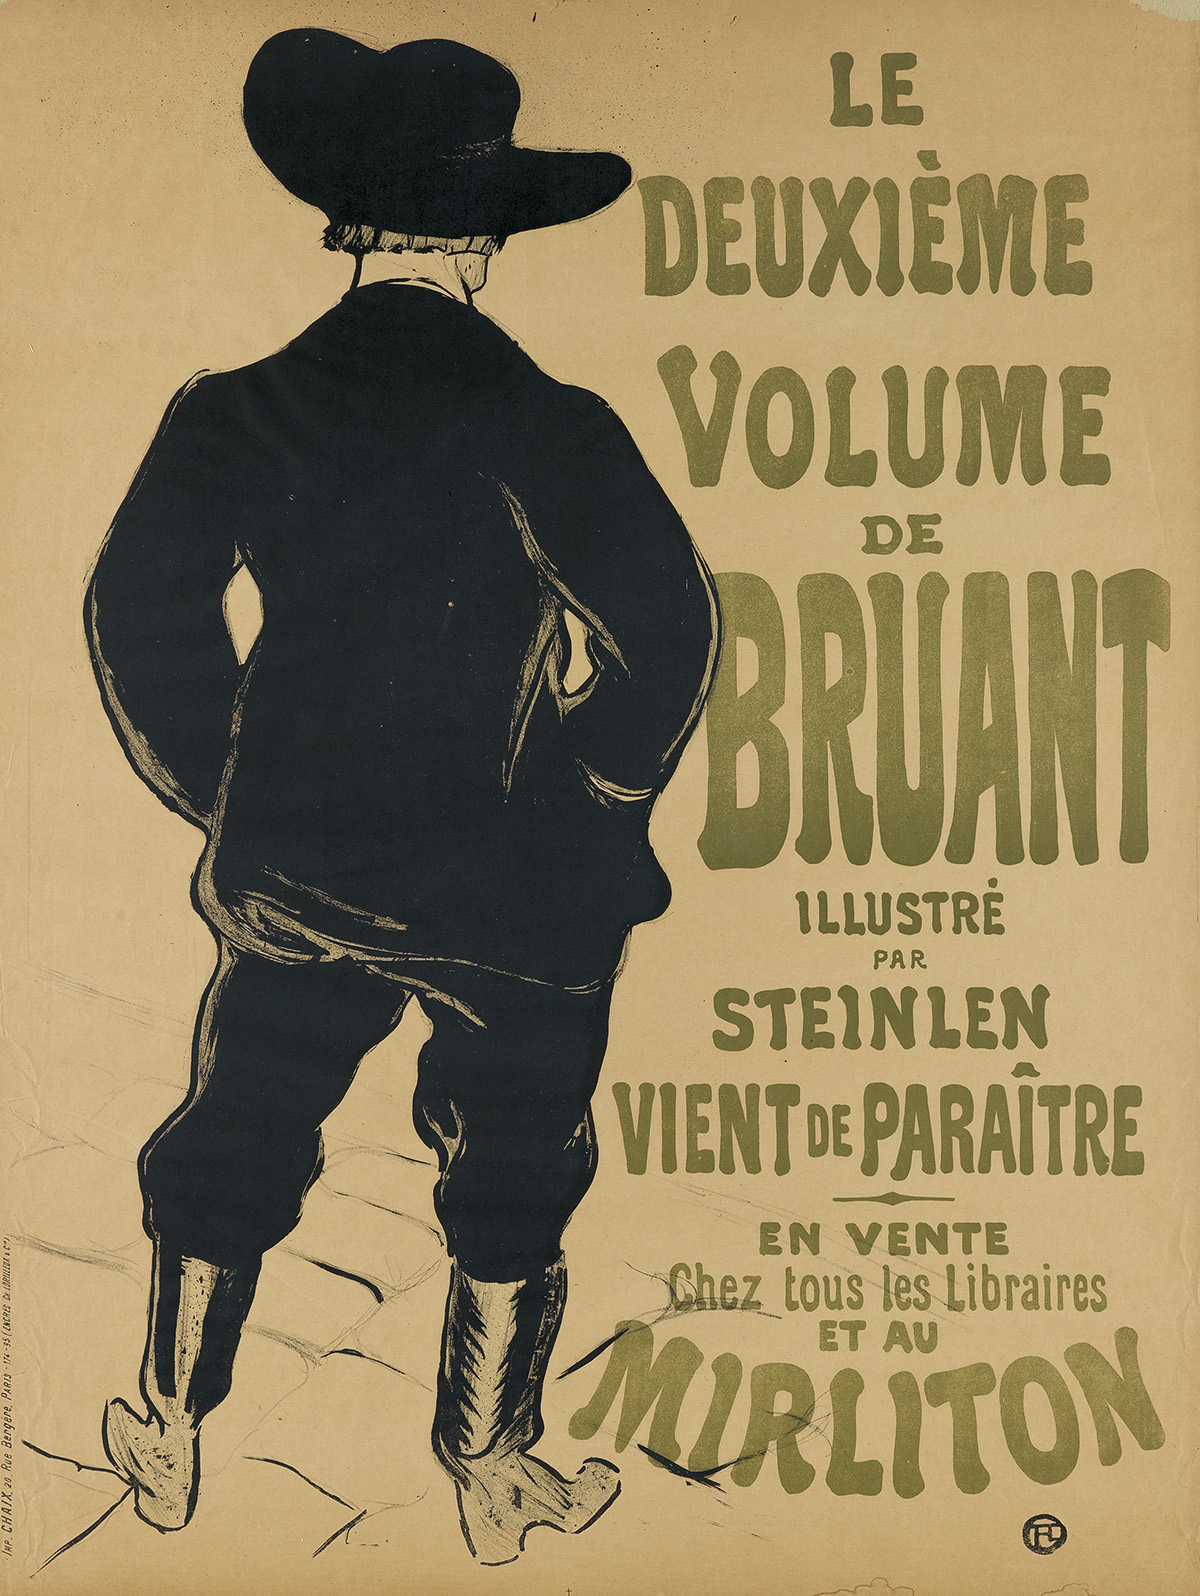 HENRI DE TOULOUSE-LAUTREC (1864-1901). LE DEUXIÈME VOLUME DE BRUANT / MIRLITON. 1893. 32x23 inches, 81x60 cm. Chaix, Paris.